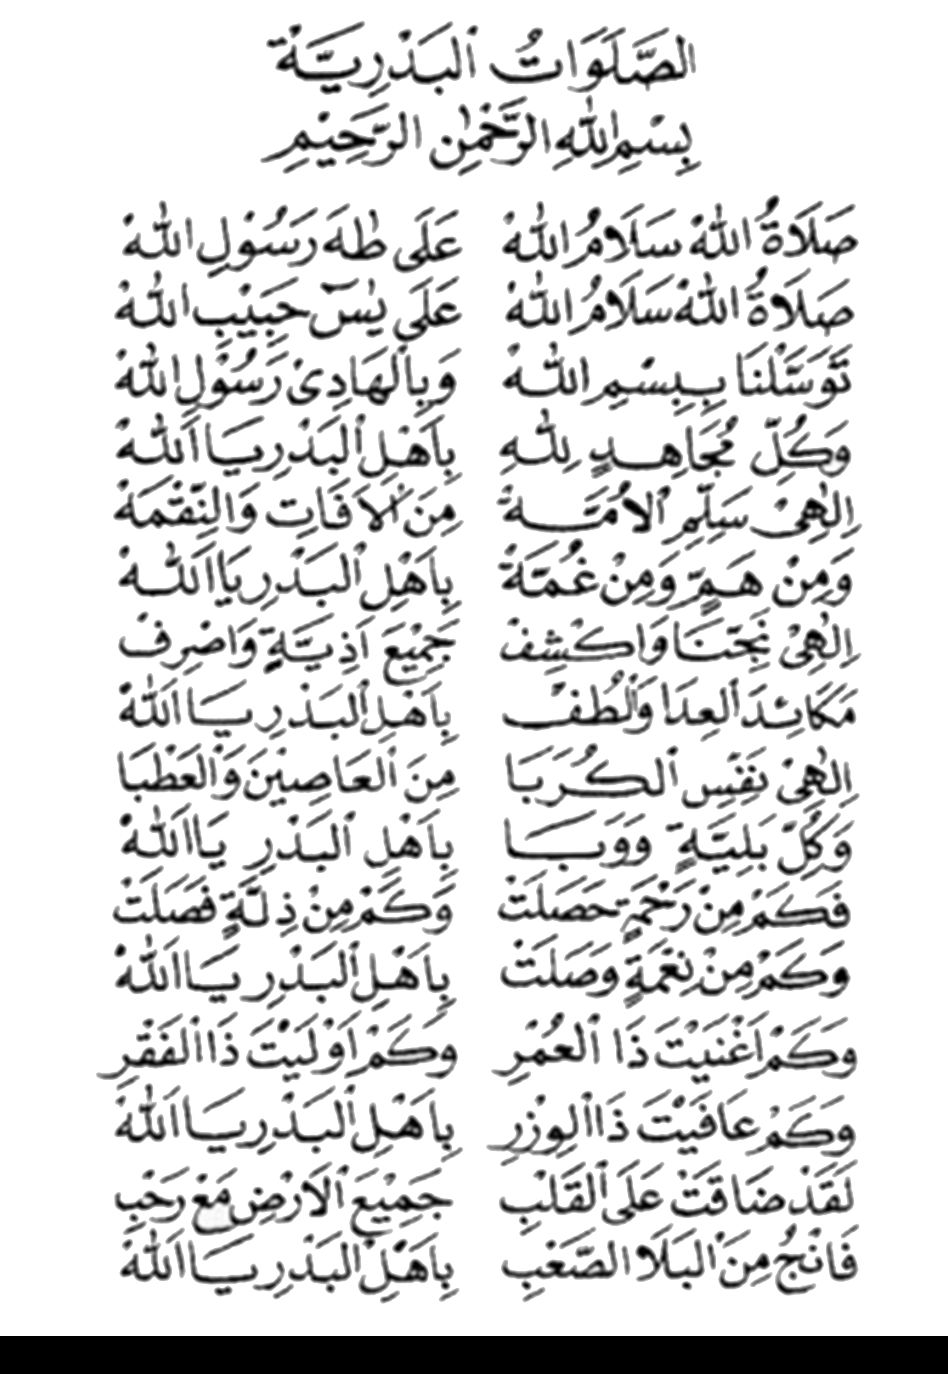 Sholawat Badar Lirik Arab, Latin, dan Artinya, Bisa Langsung Didownload  dalam versi latin dan artinya. 